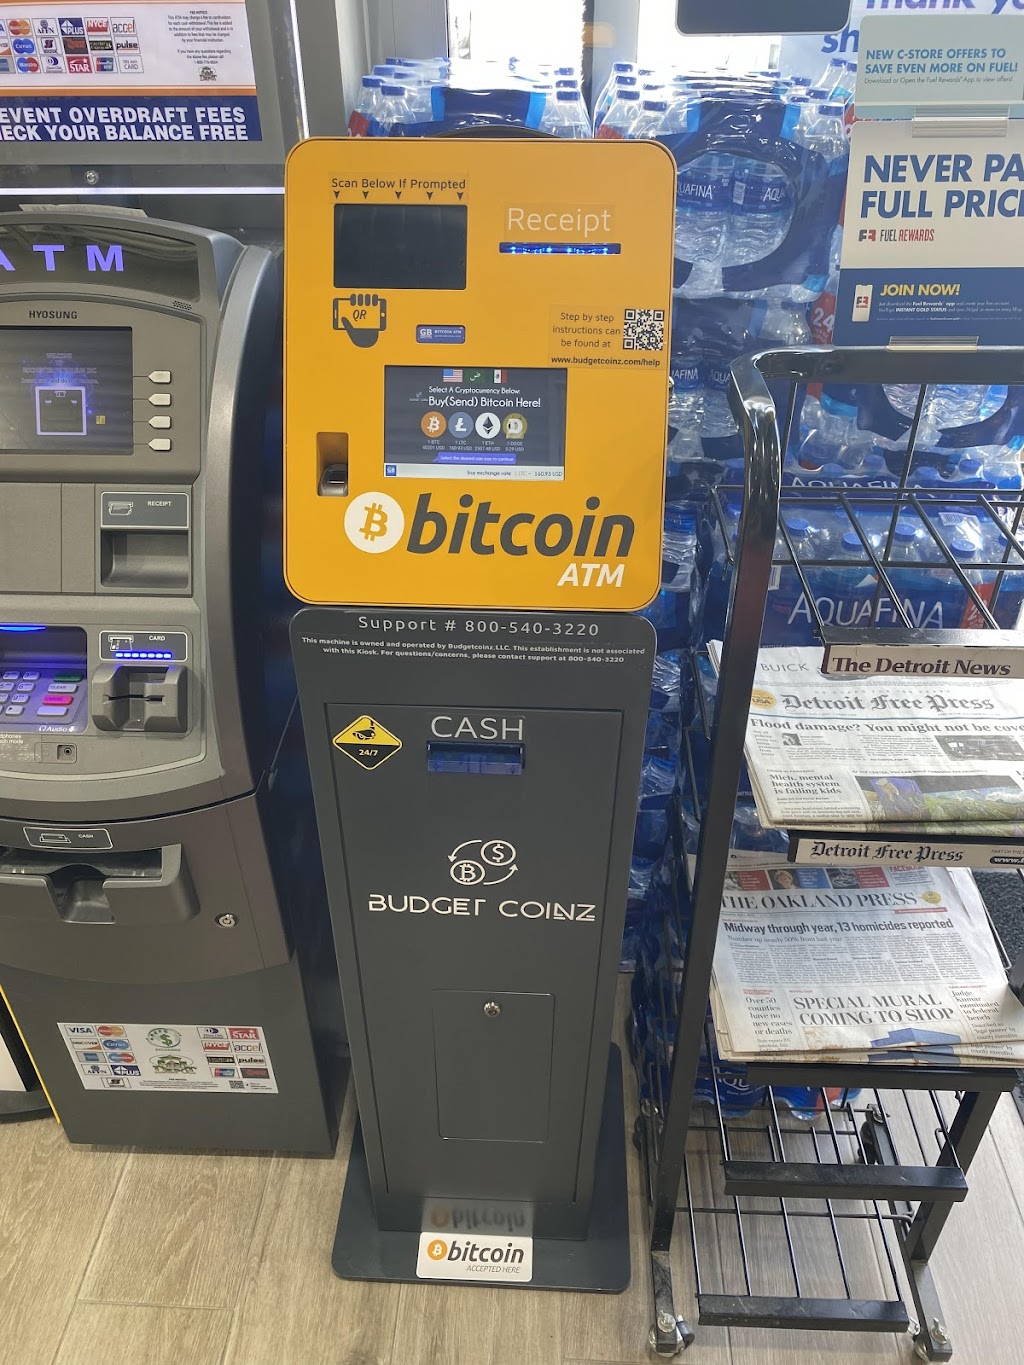 BudgetCoinz Bitcoin ATM | 2020 S Rochester Rd, Rochester Hills, MI 48307 | Phone: (800) 540-3220